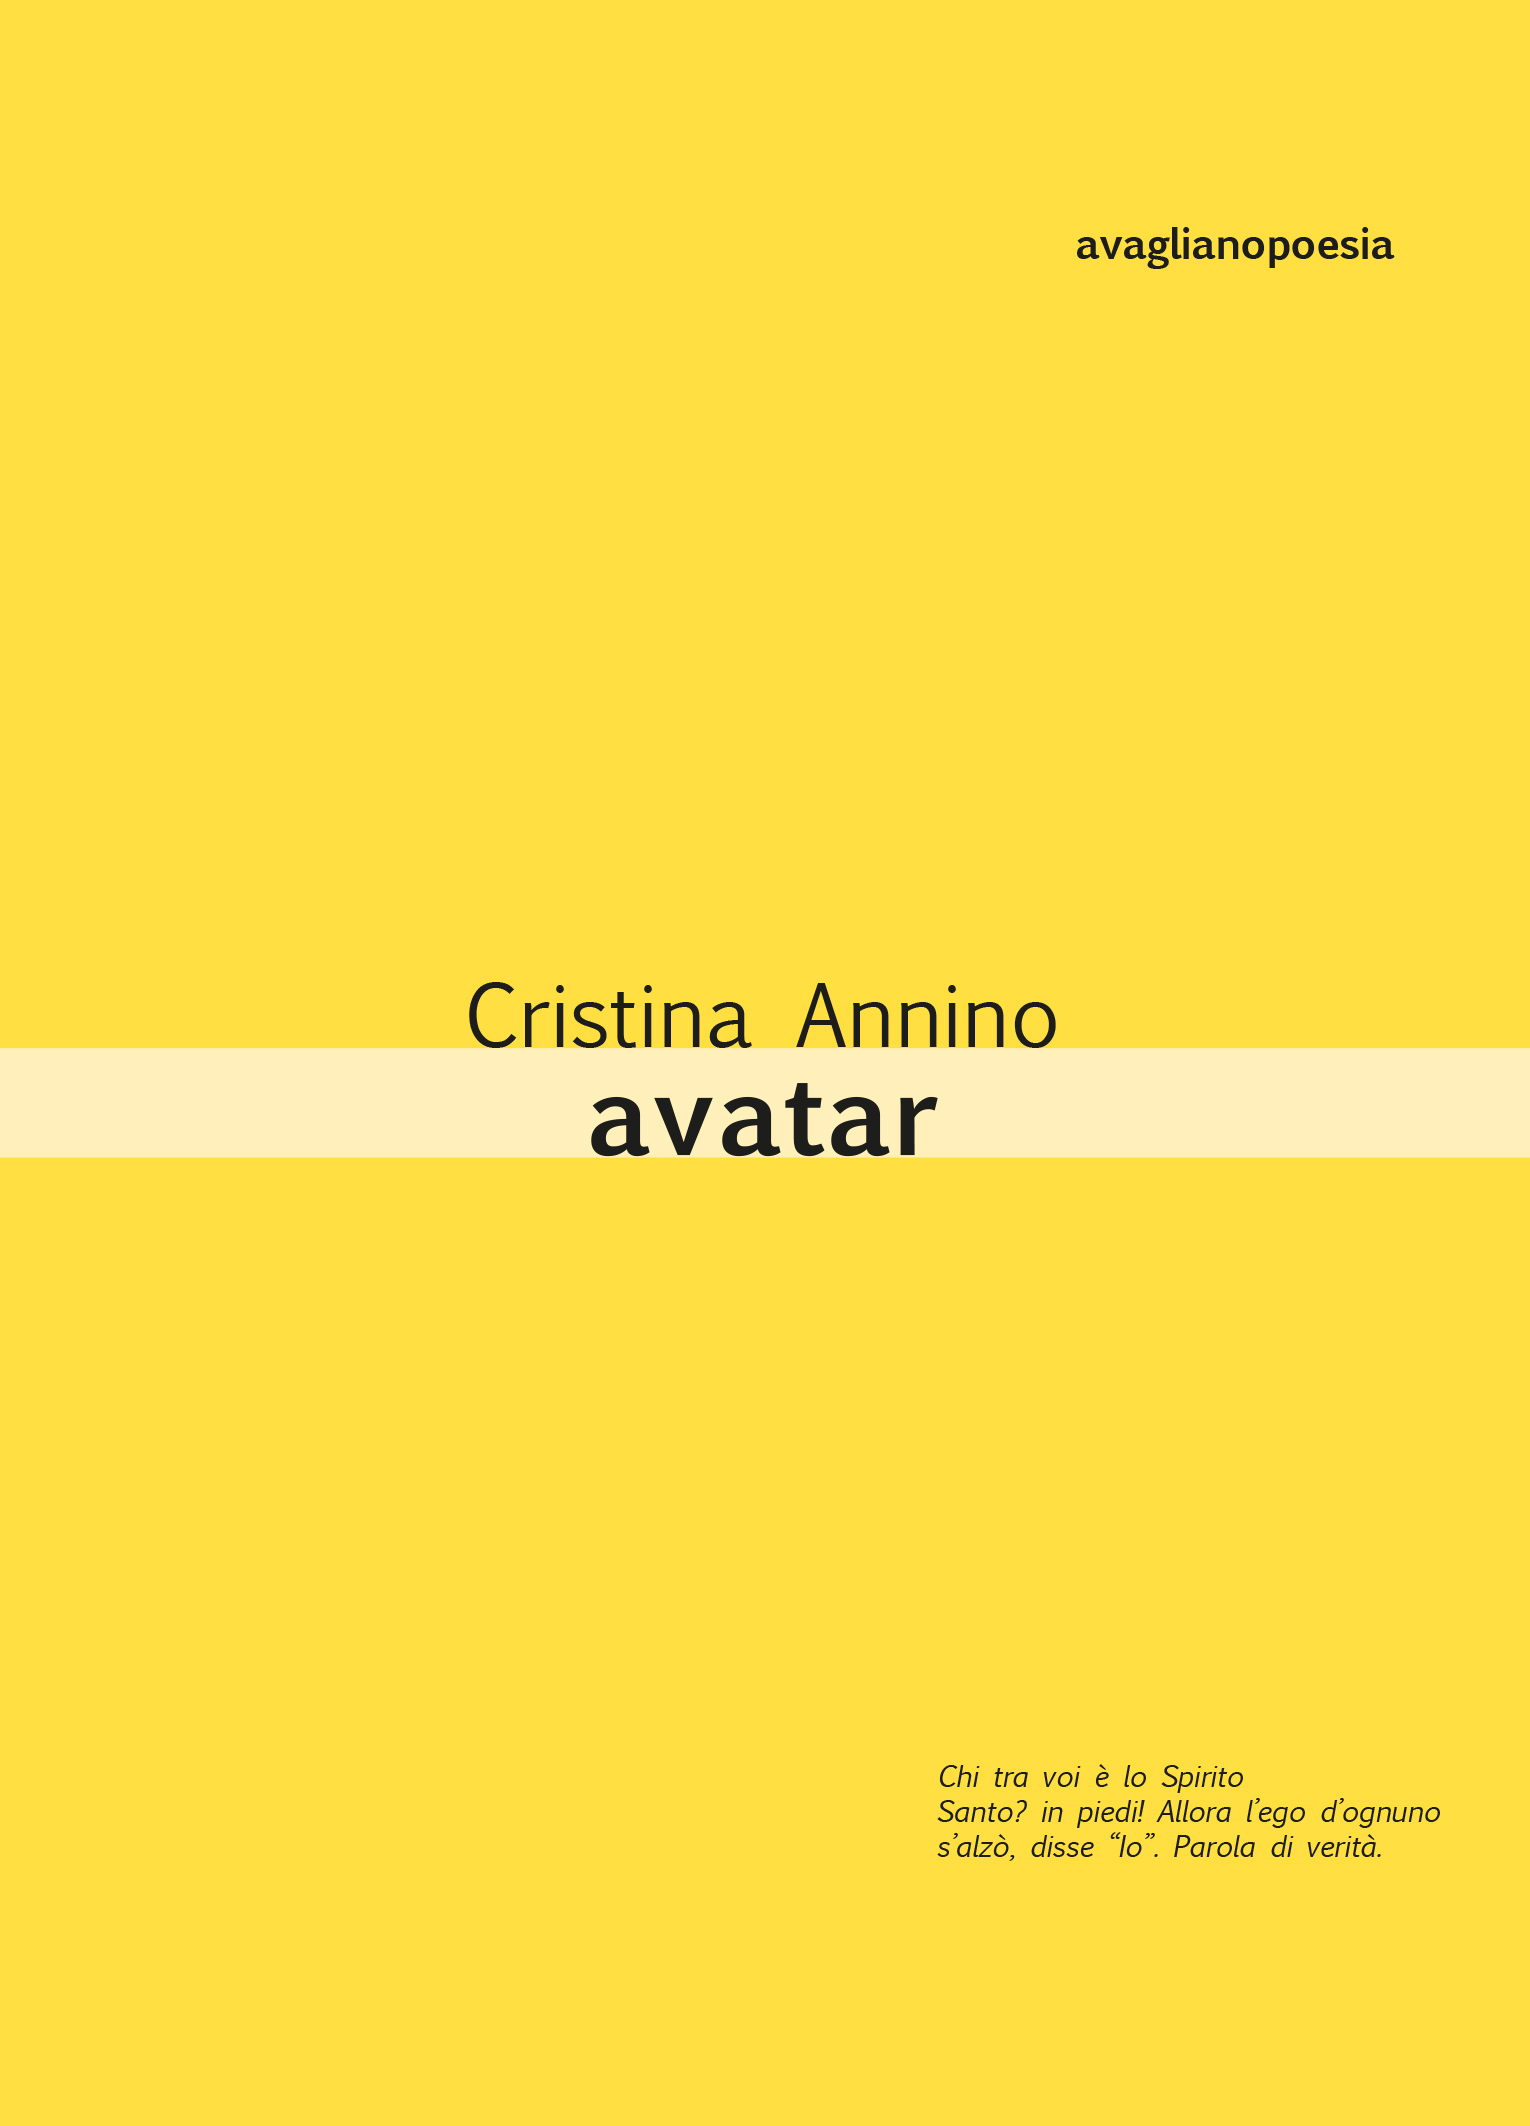 La voce rivoluzionaria e senza tempo di Cristina Annino